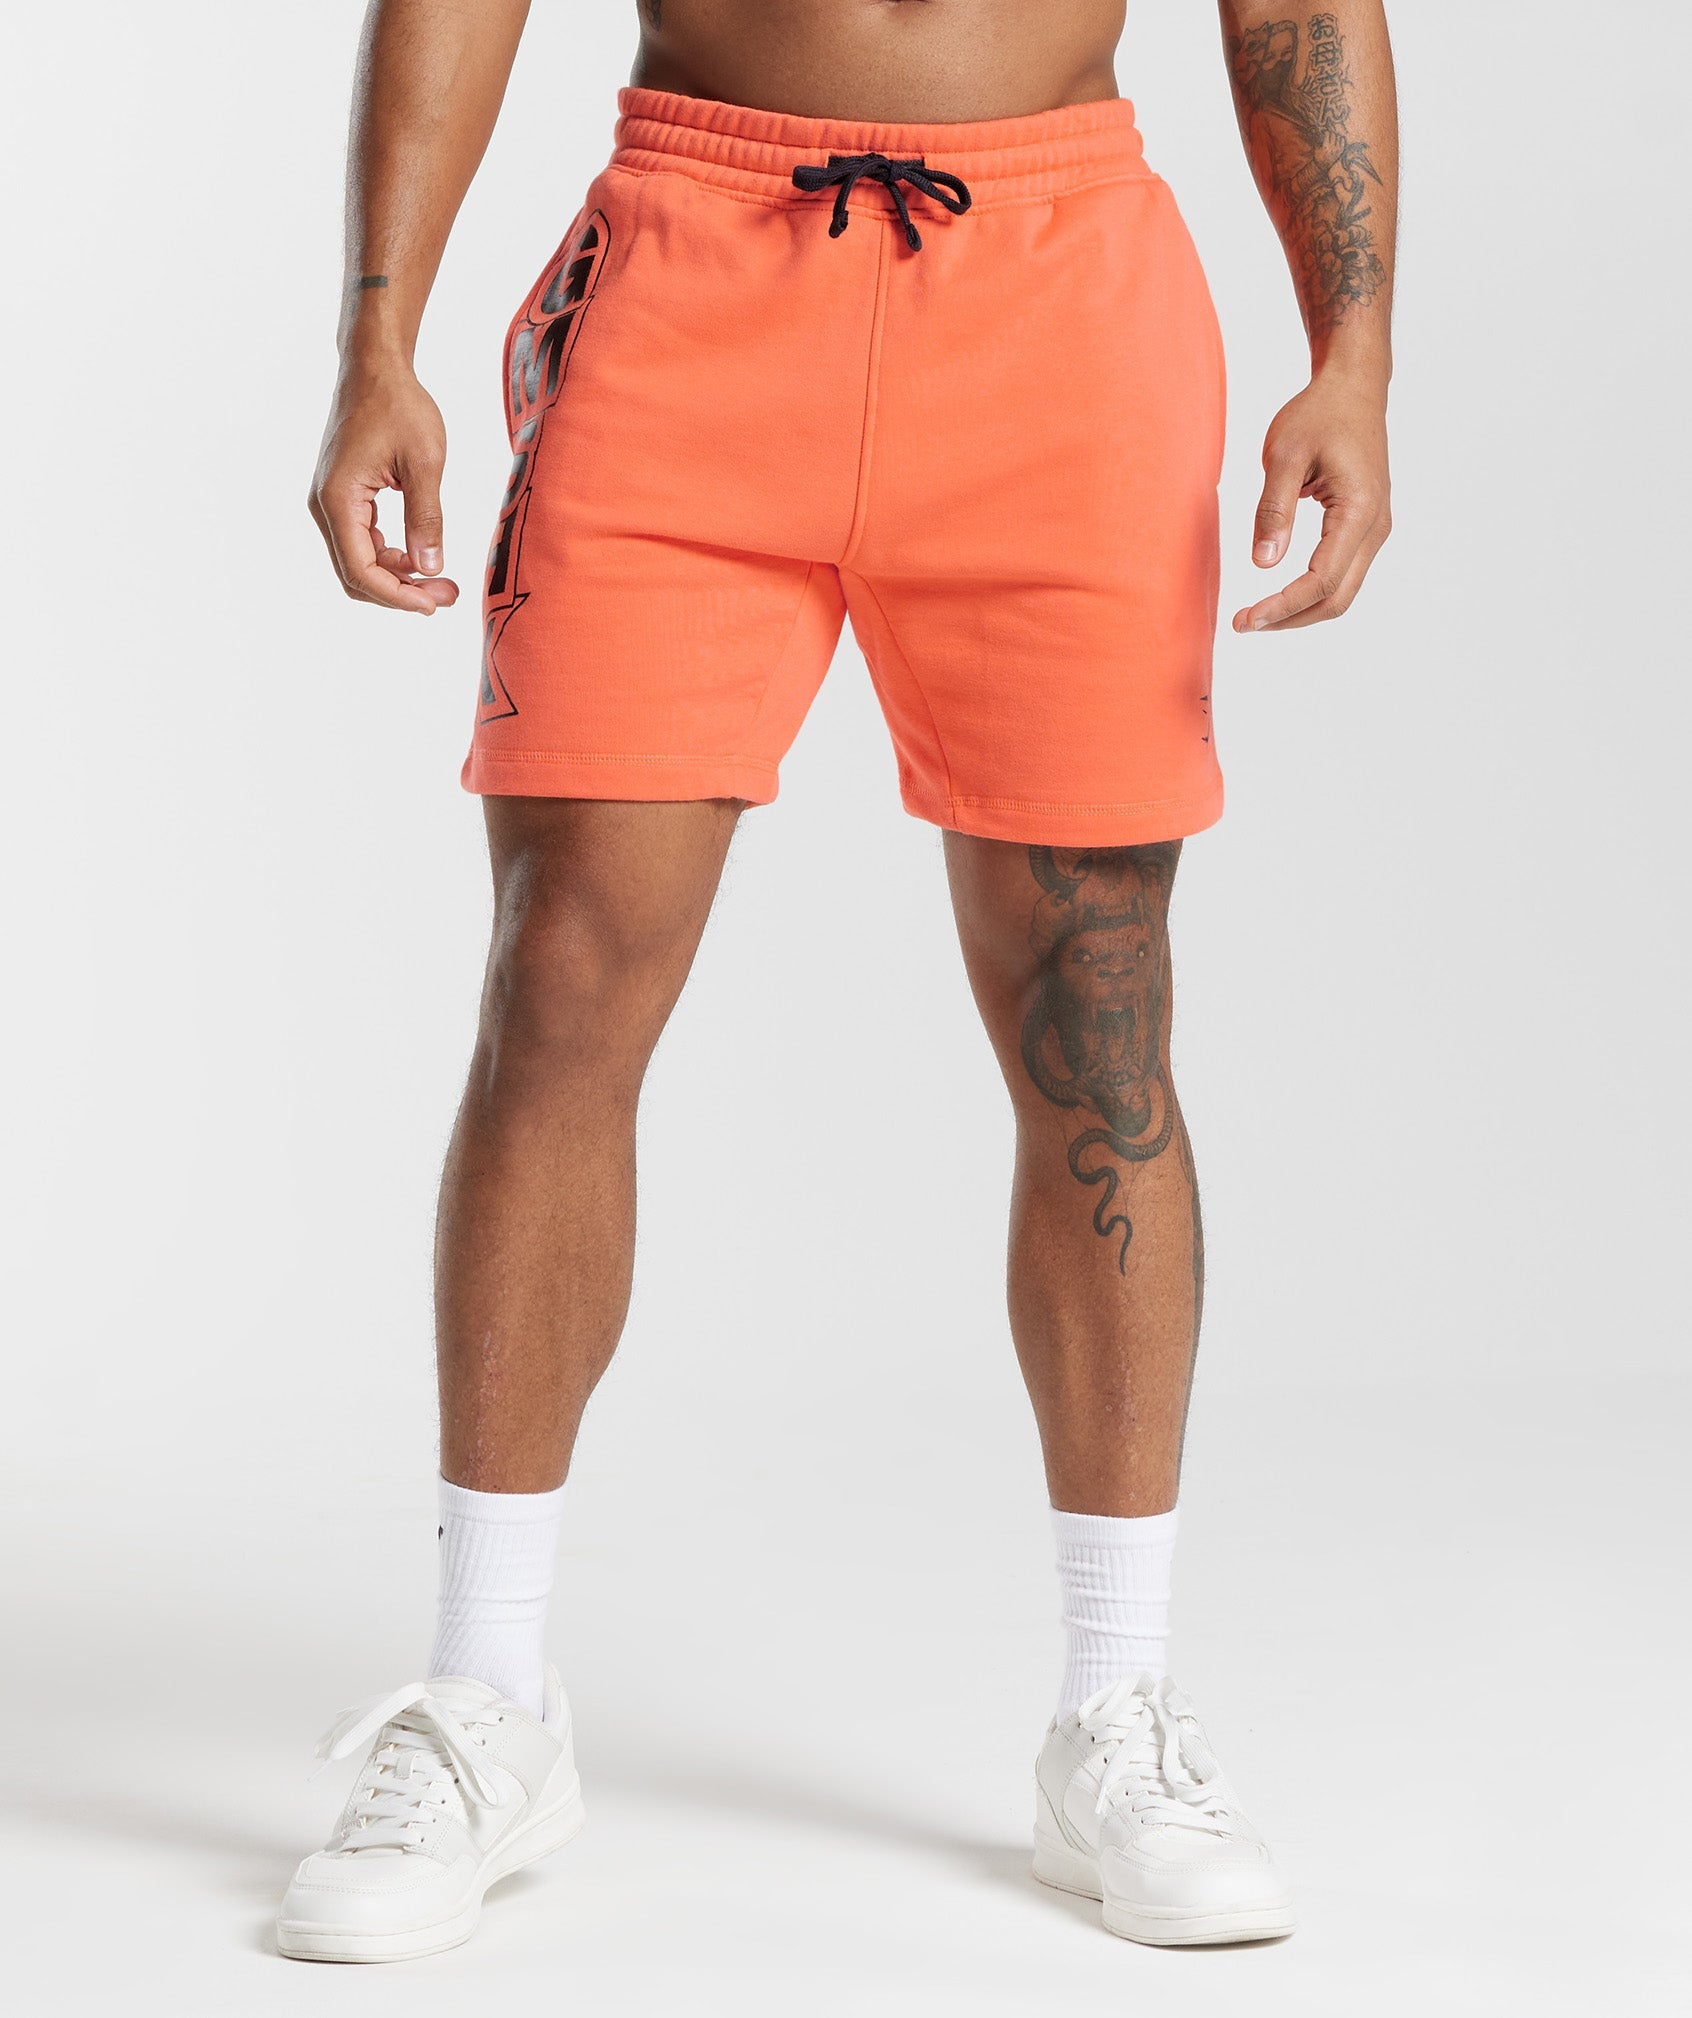 GMSHK Shorts in Solstice Orange - view 1